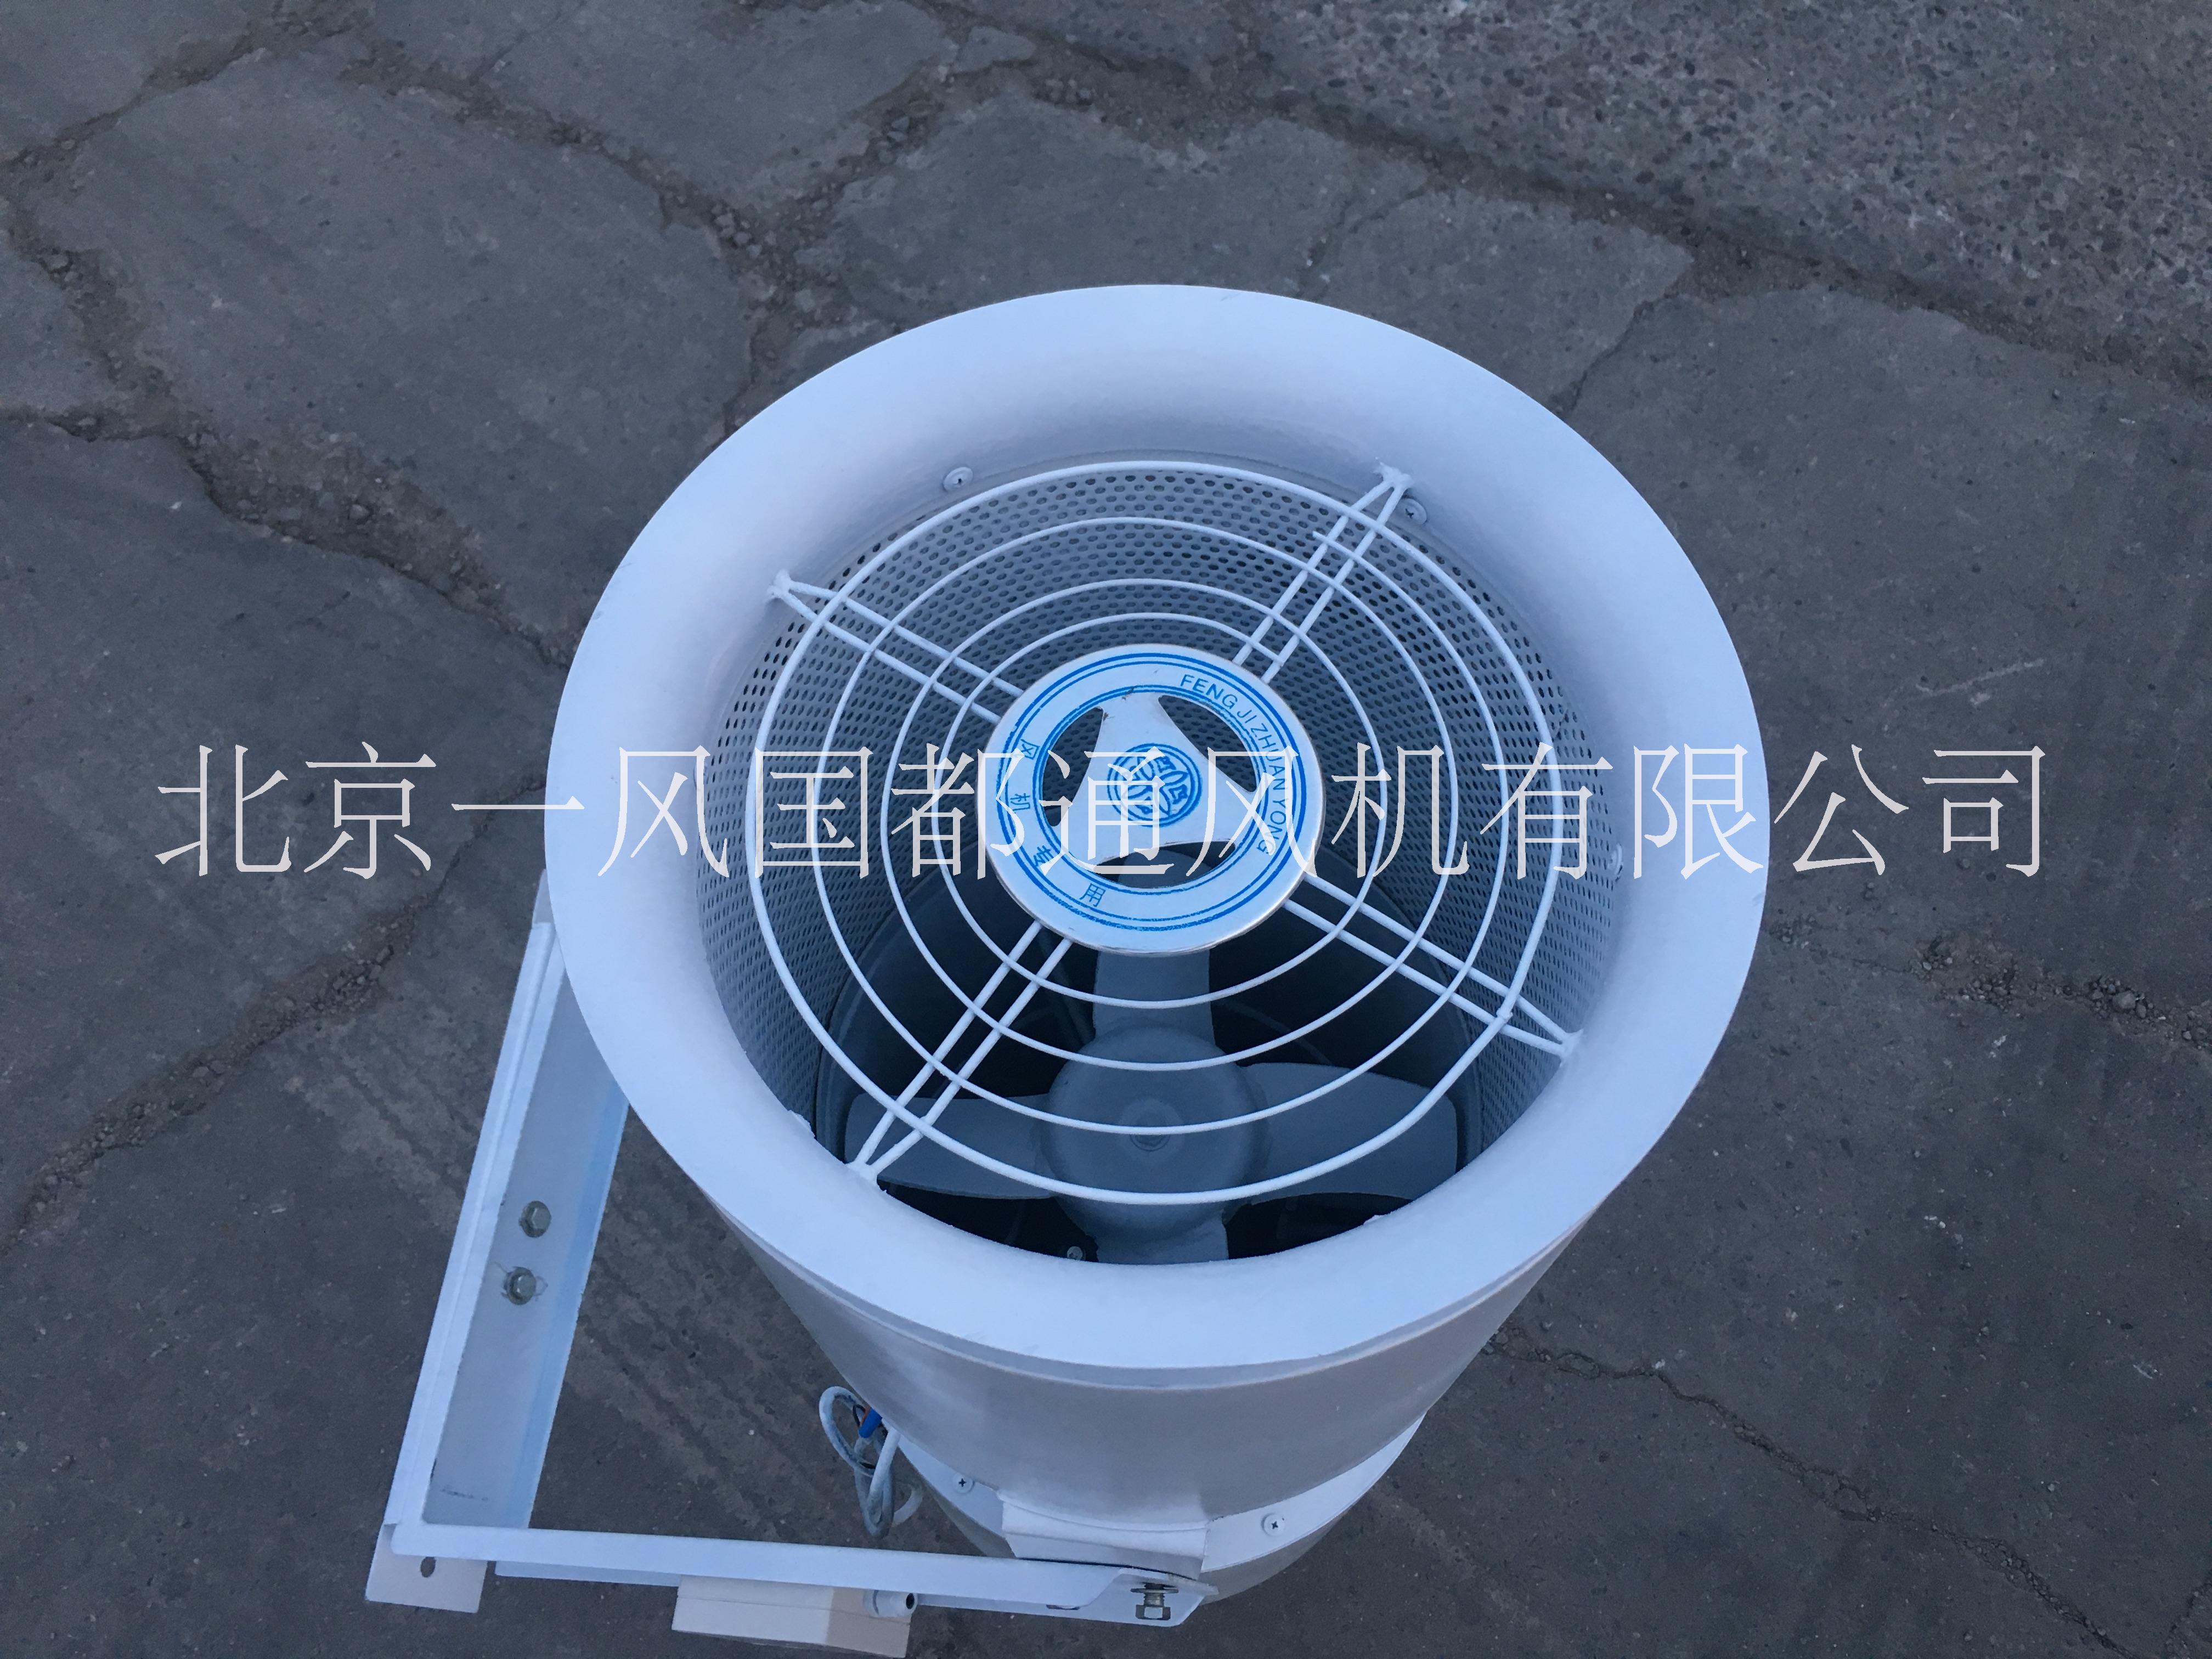 射流风机 射流风机供应 射流风机厂家 射流风机价格 北京射流风机